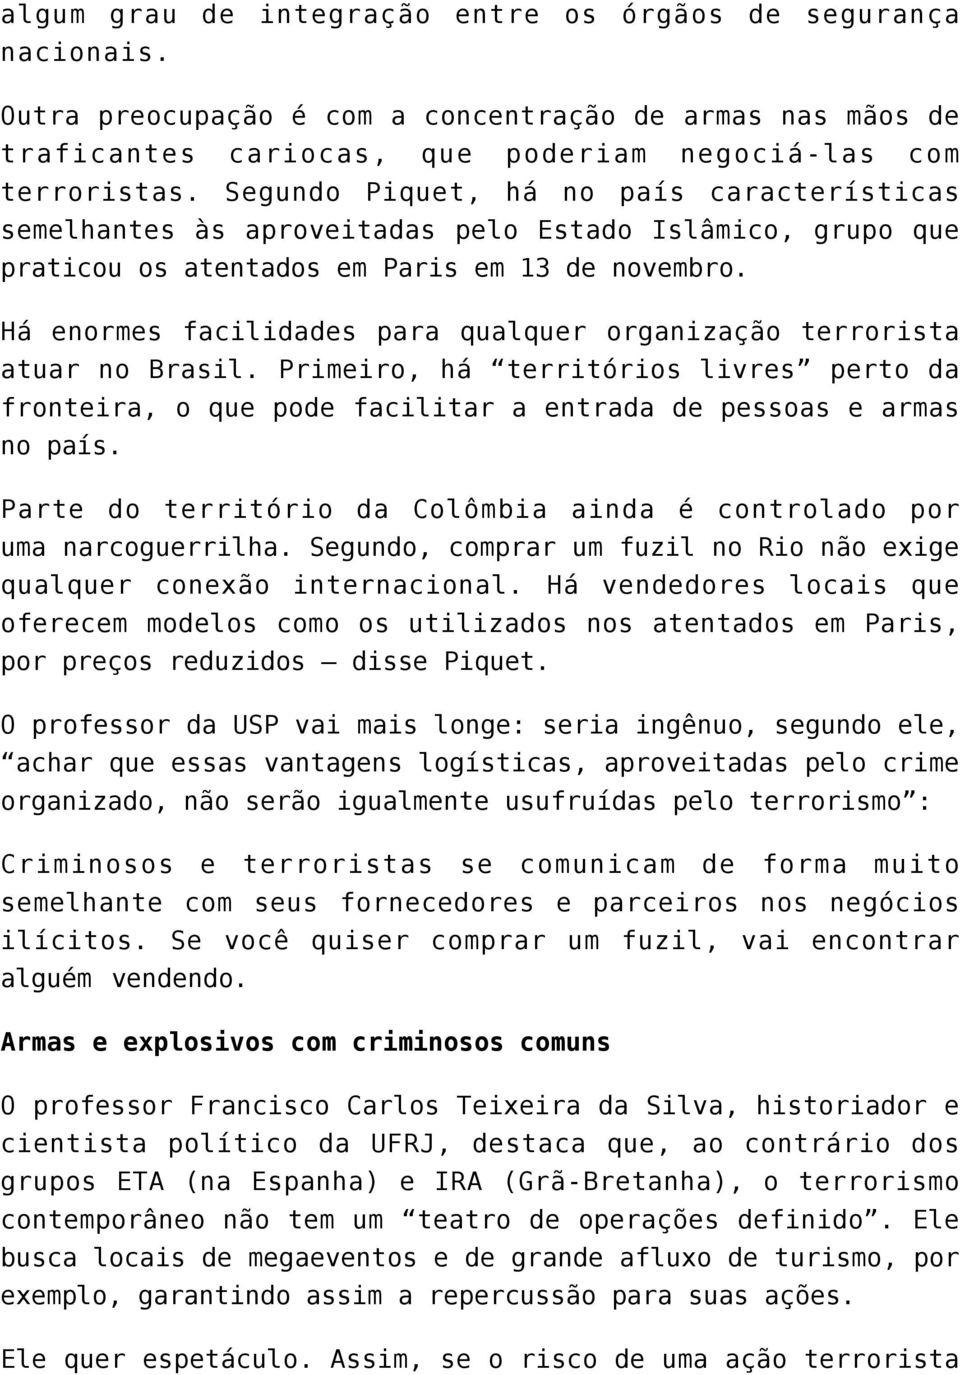 Há enormes facilidades para qualquer organização terrorista atuar no Brasil. Primeiro, há territórios livres perto da fronteira, o que pode facilitar a entrada de pessoas e armas no país.